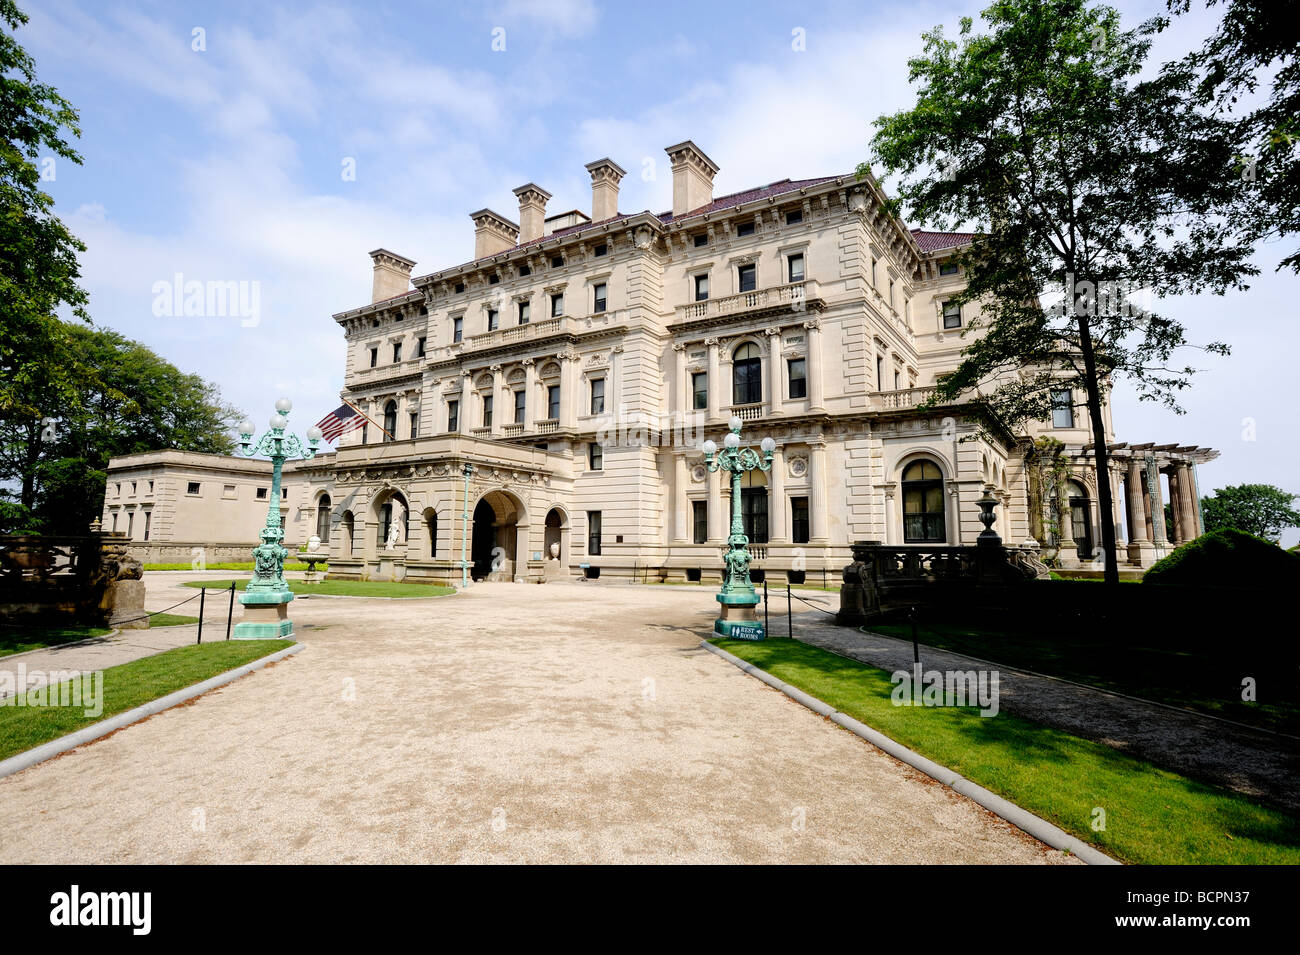 The Breakers Sommerhaus an der Vanderbilt-Familie in Rhode Island, erbaut zwischen 1893-95 70 Zimmer Villa kostet $ 7 Millionen Stockfoto